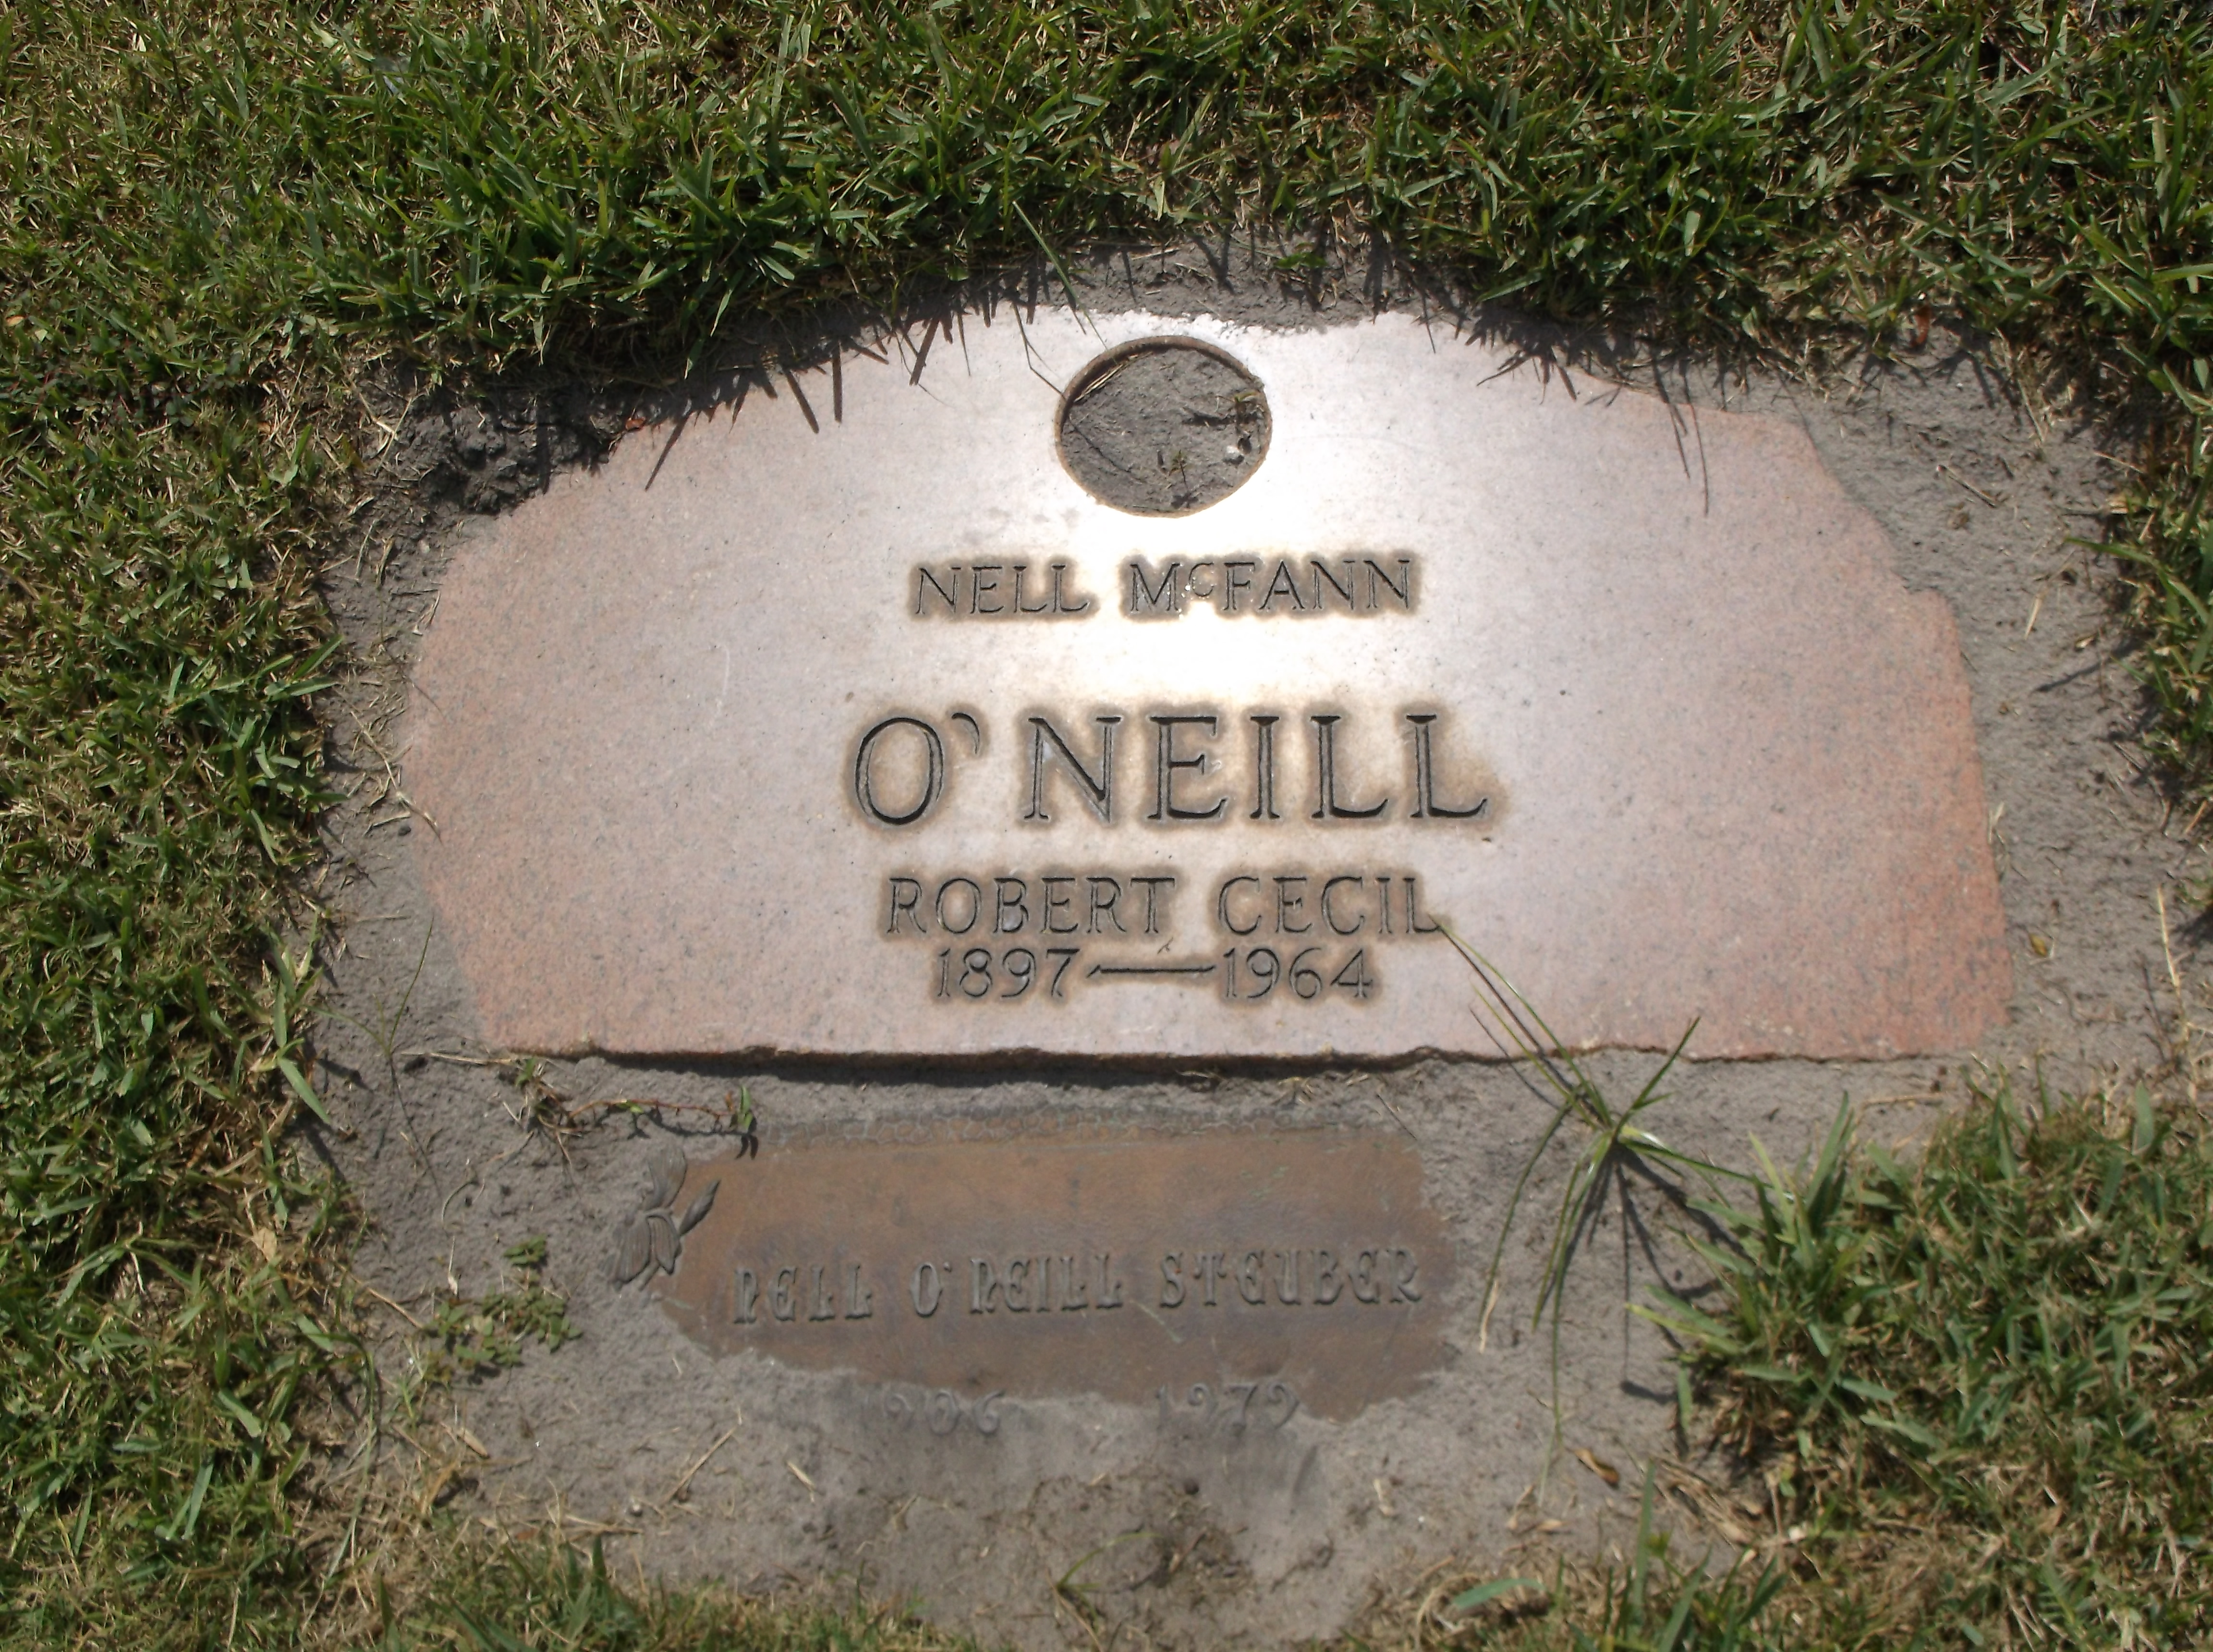 Robert Cecil O'Neill